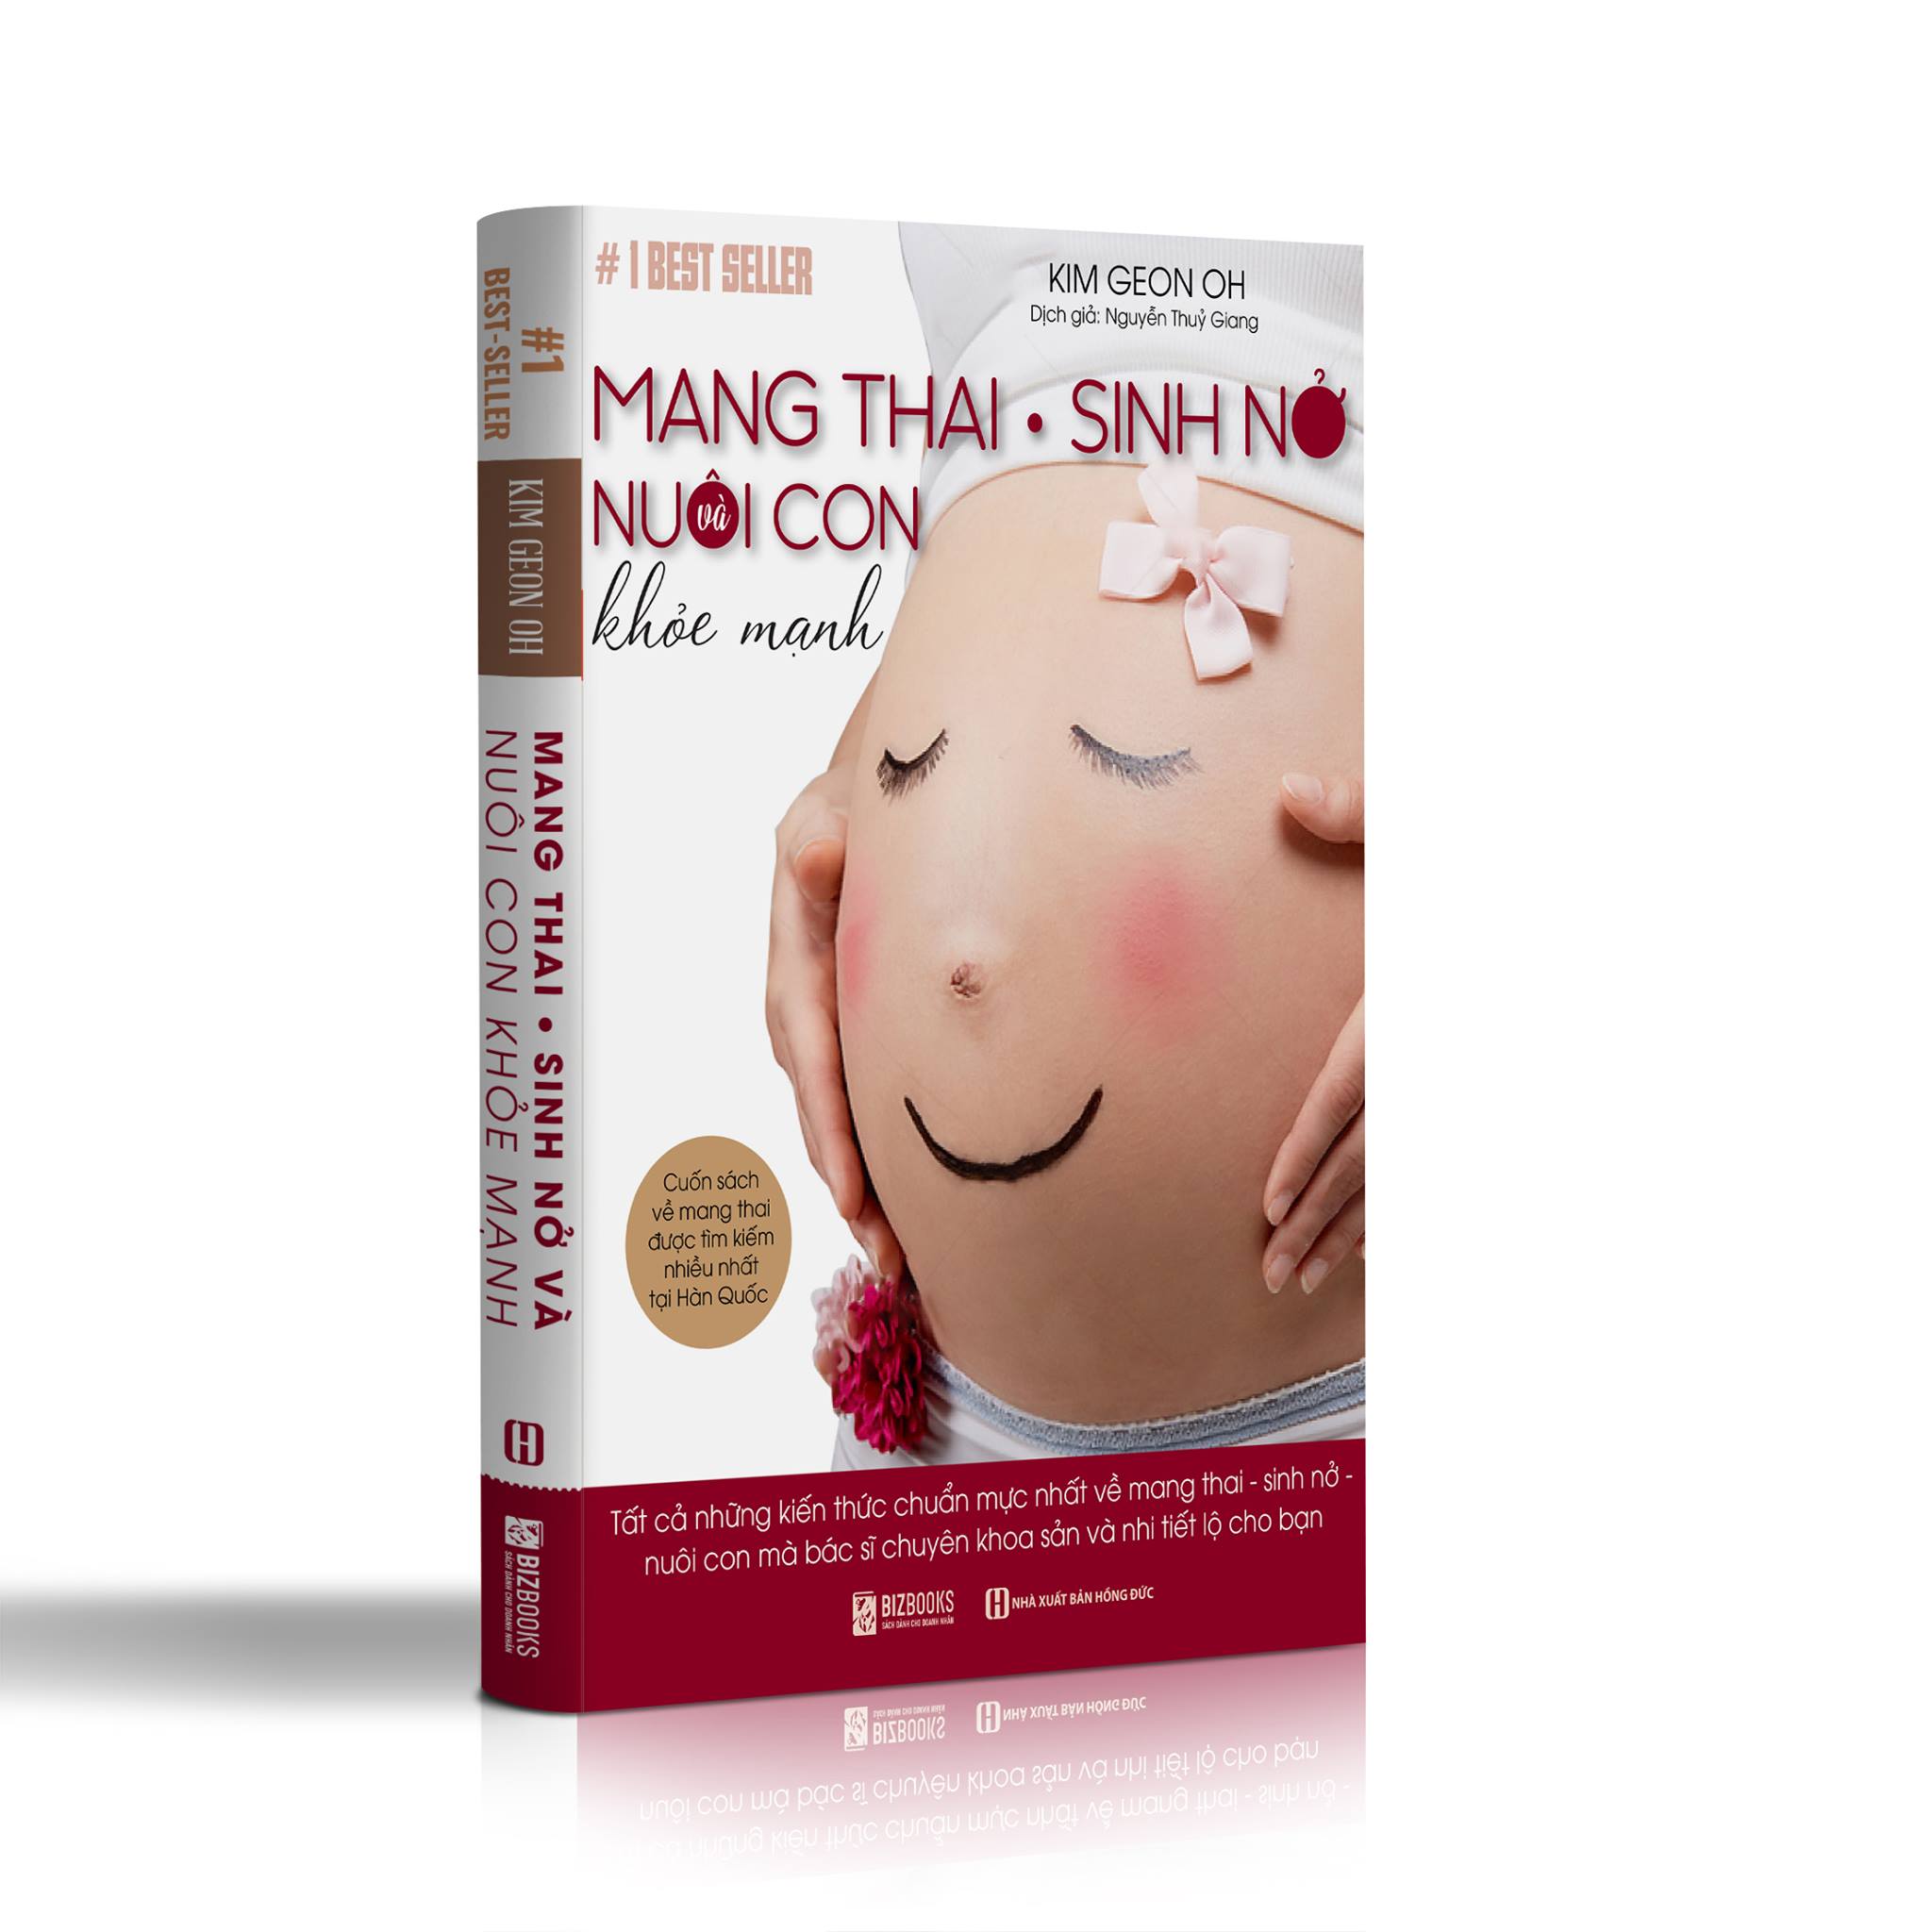 Mang Thai Sinh Nở Và Nuôi Con Khỏe Mạnh: Cuốn sách về mang thai được tìm kiếm nhiều nhất tại Hàn Quốc 2